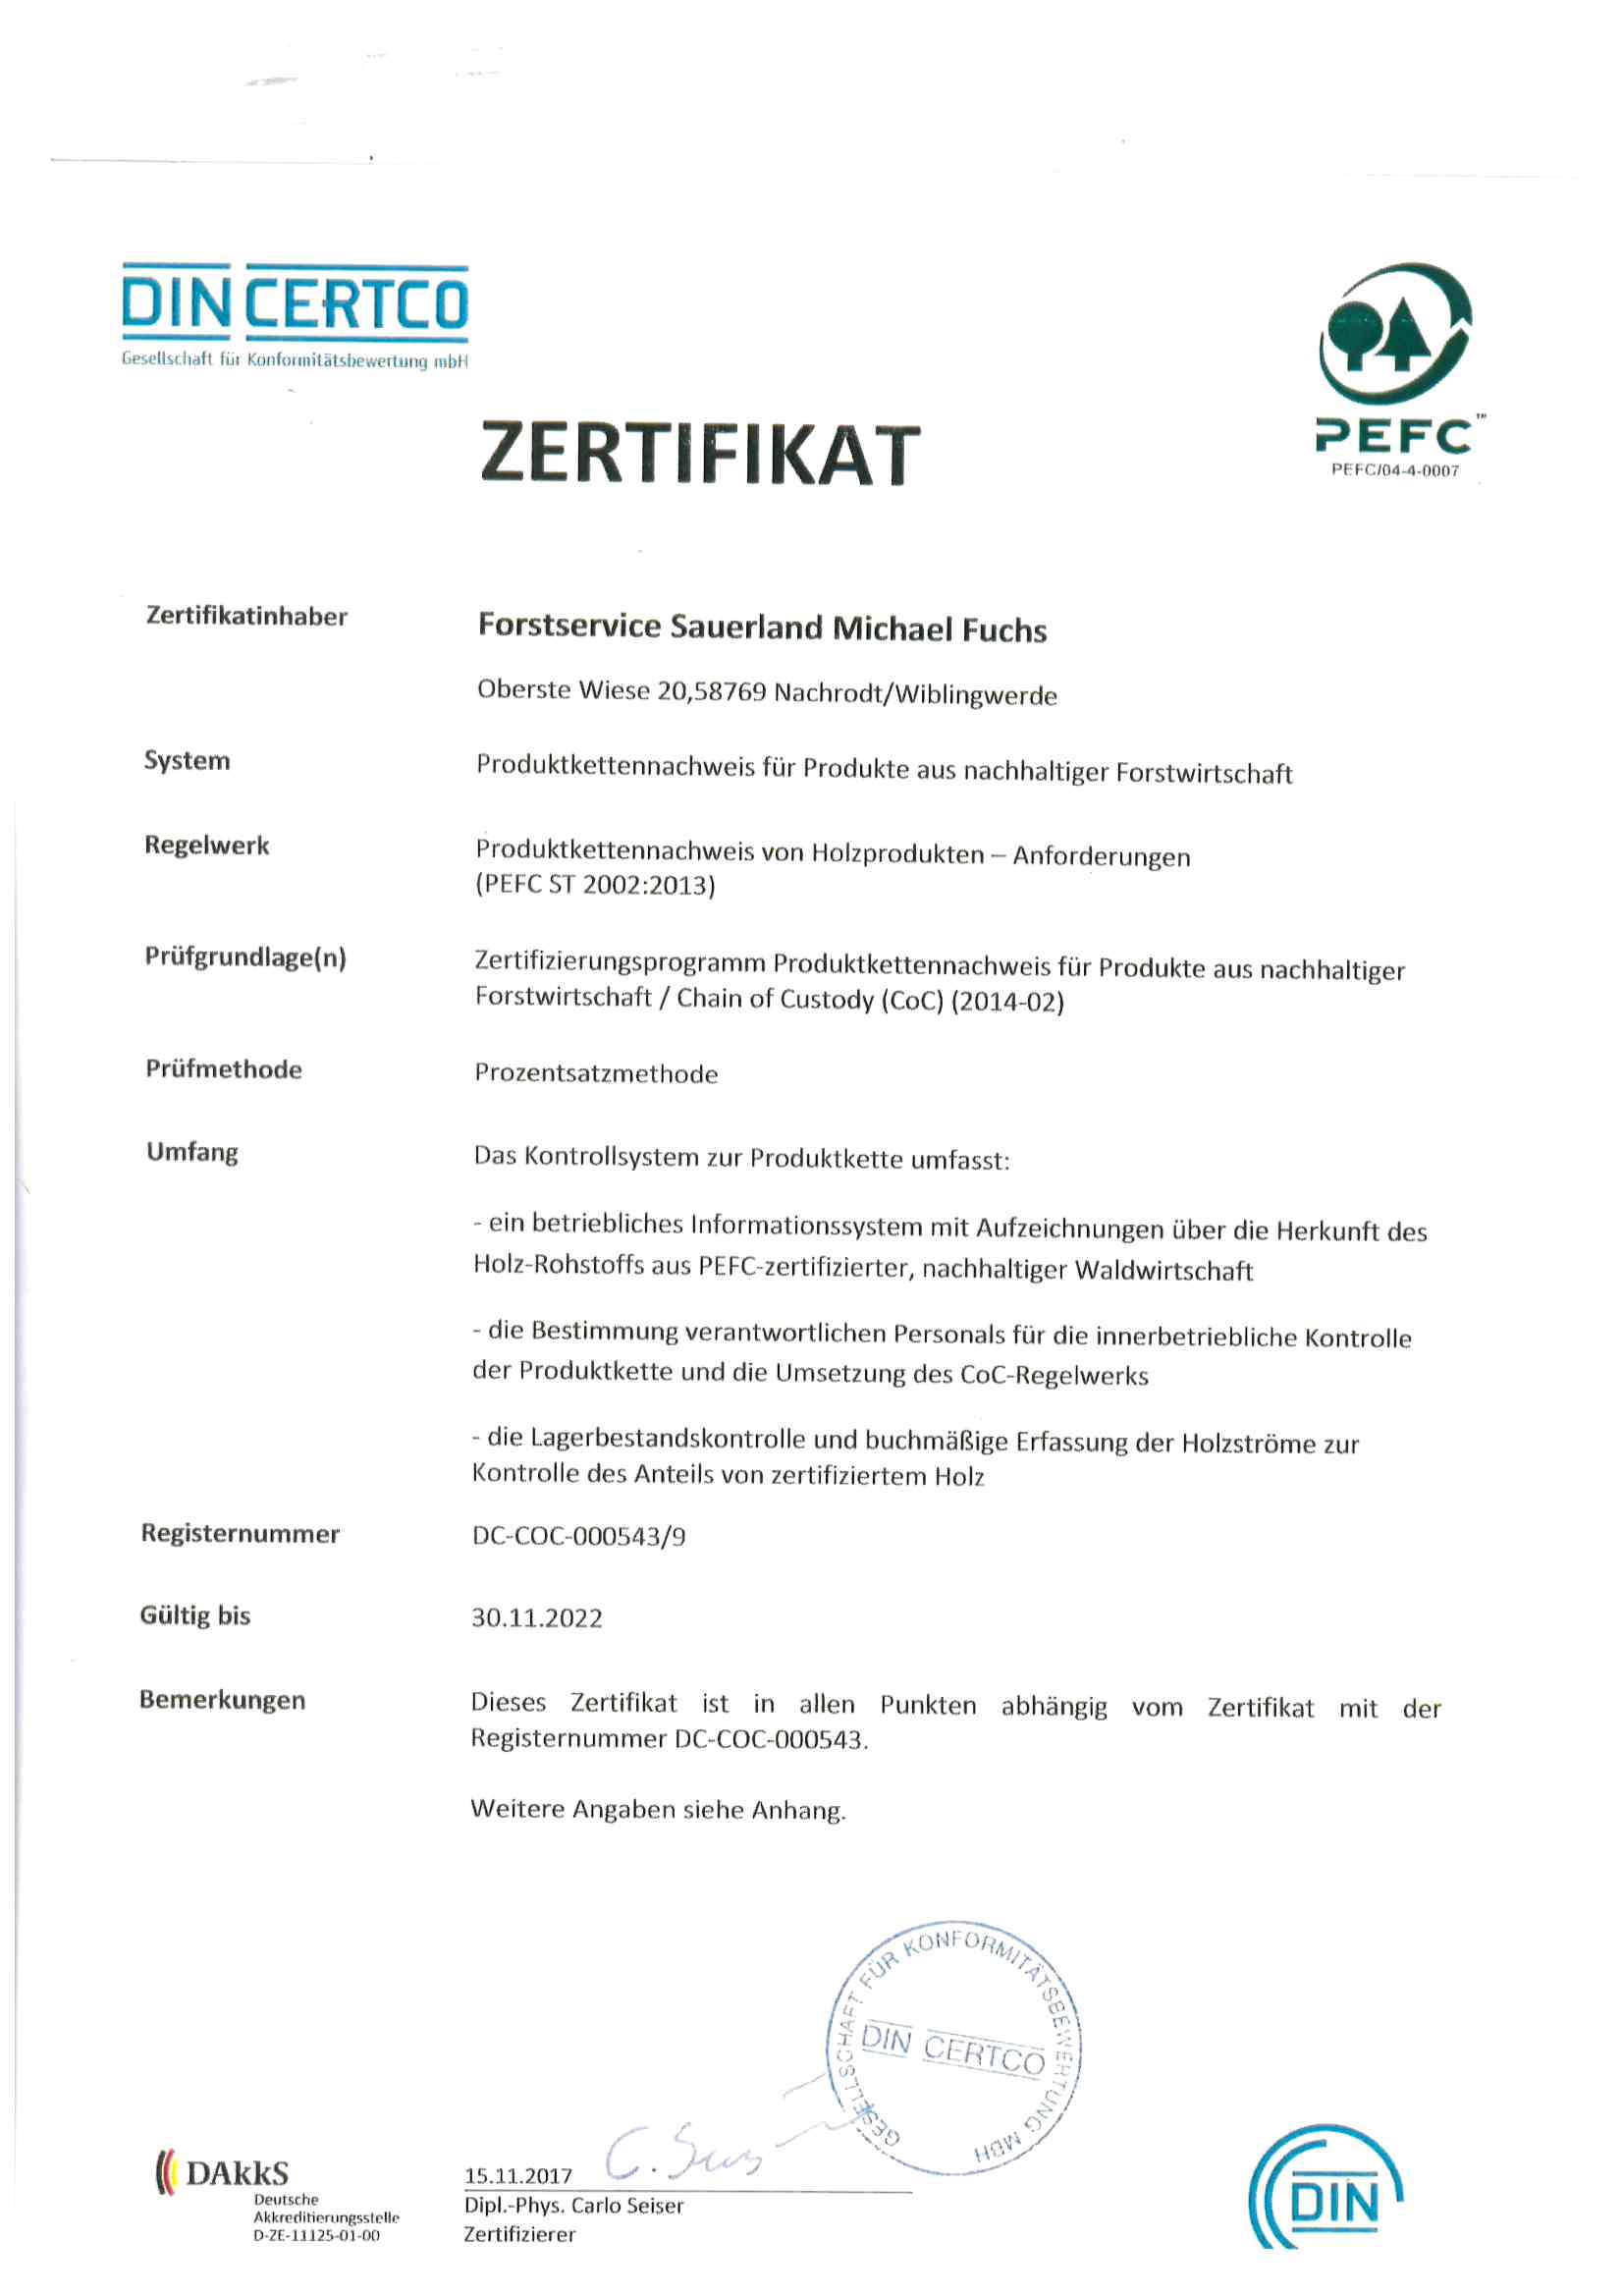 Zertifikat PEFC